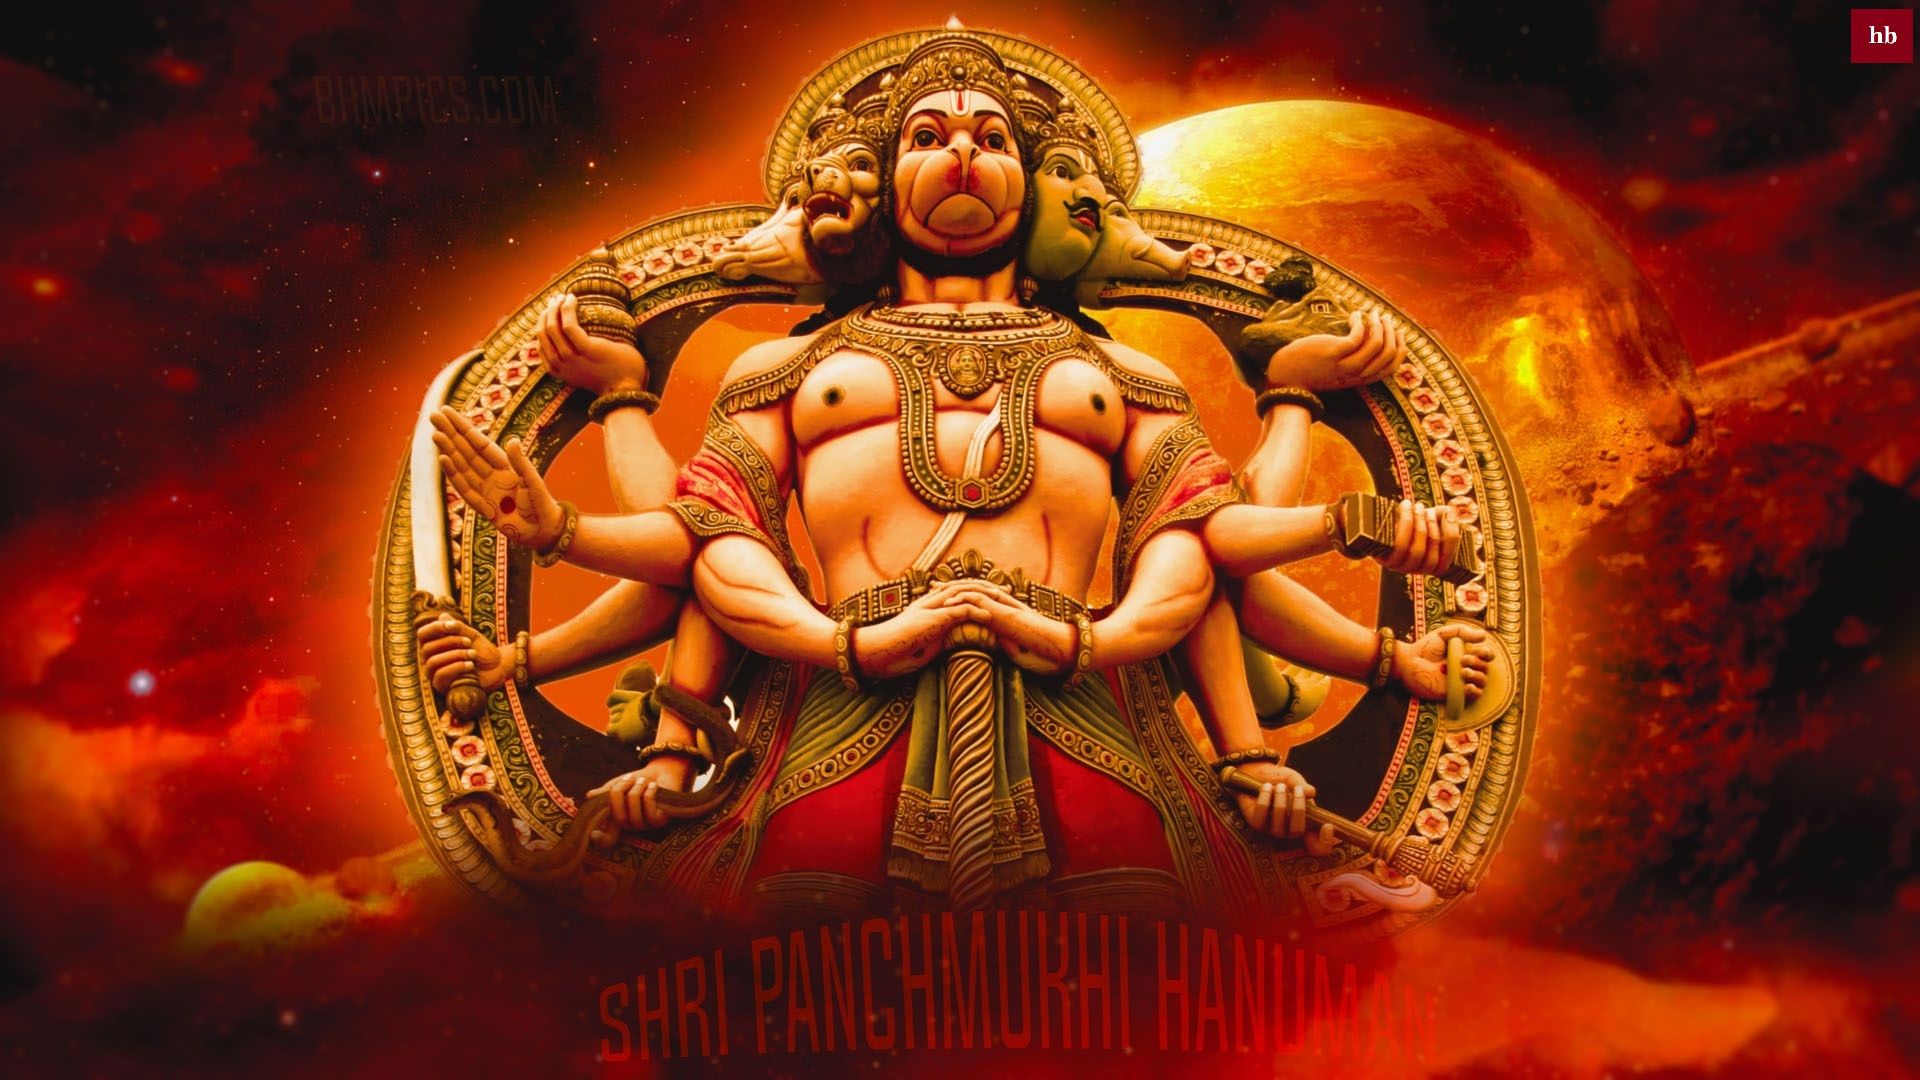 Panchmukhi Hanuman wallpaper , Panchmukhi Hanuman Image, Panchmukhi Hanuman photo, Panchmukhi Hanuman HD wallpaper